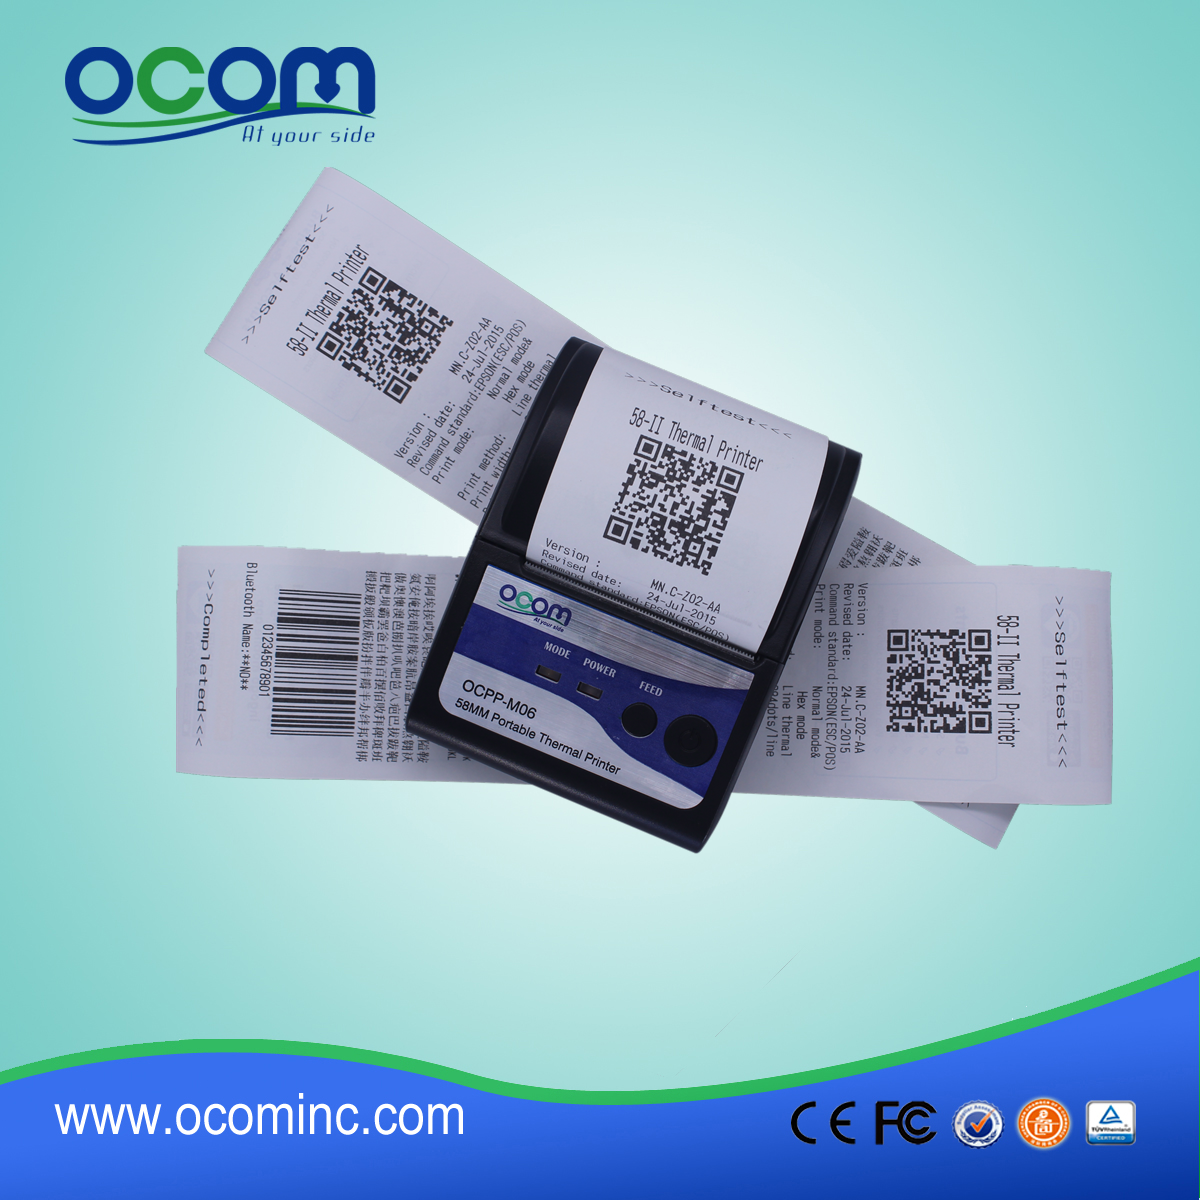 (OCPP-M06) OCOM Hot sprzedaży niski koszt android drukarki drukarki pos